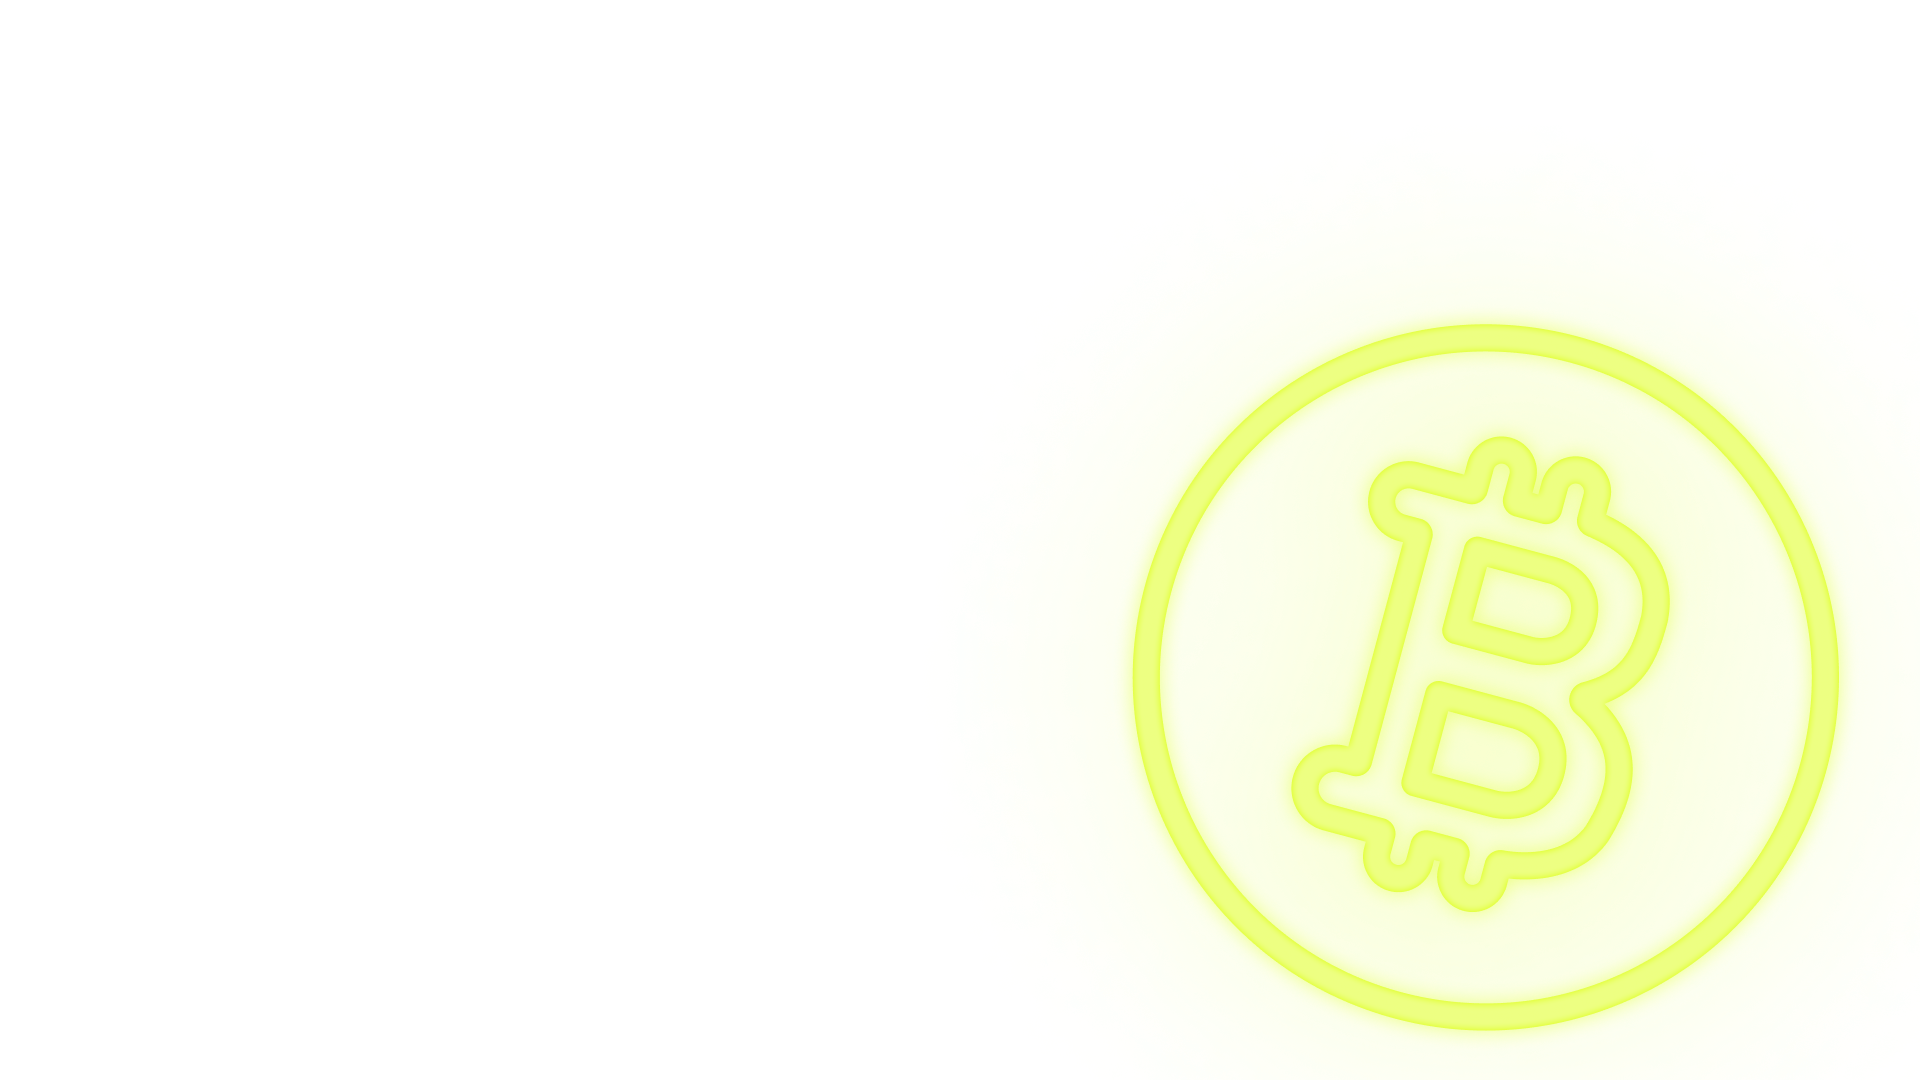 Buy Bitcoin with Lunar Block — Lunar